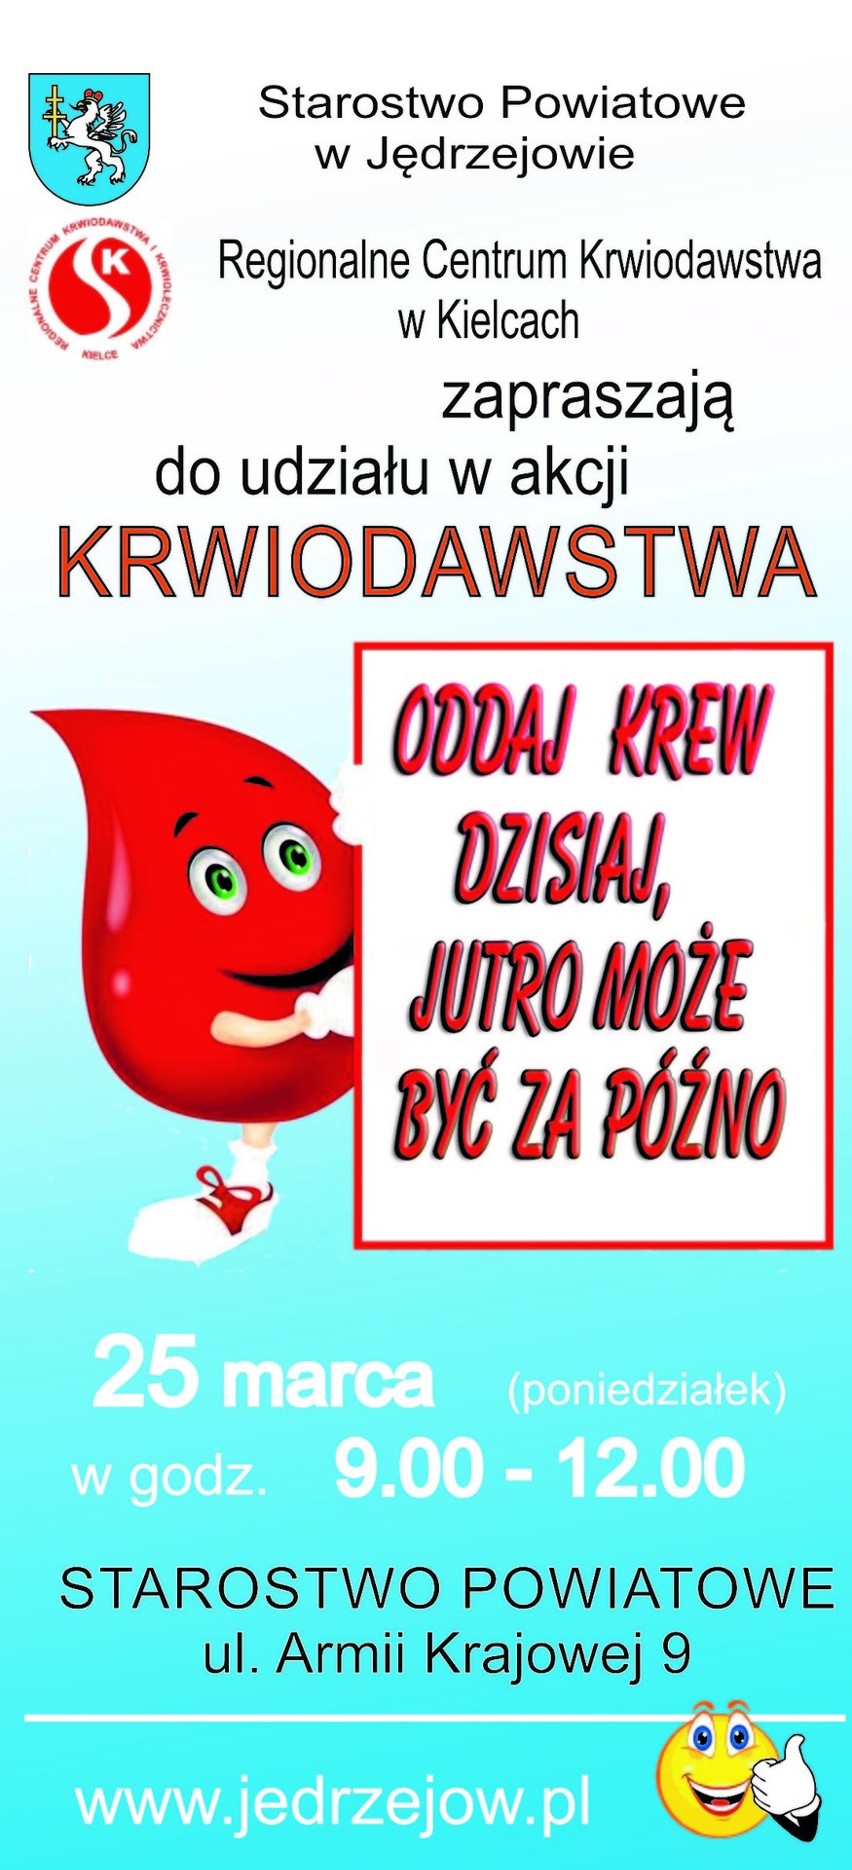 Akcja honorowego krwiodawstwa ze Starostwem Powiatowym w Jędrzejowie!